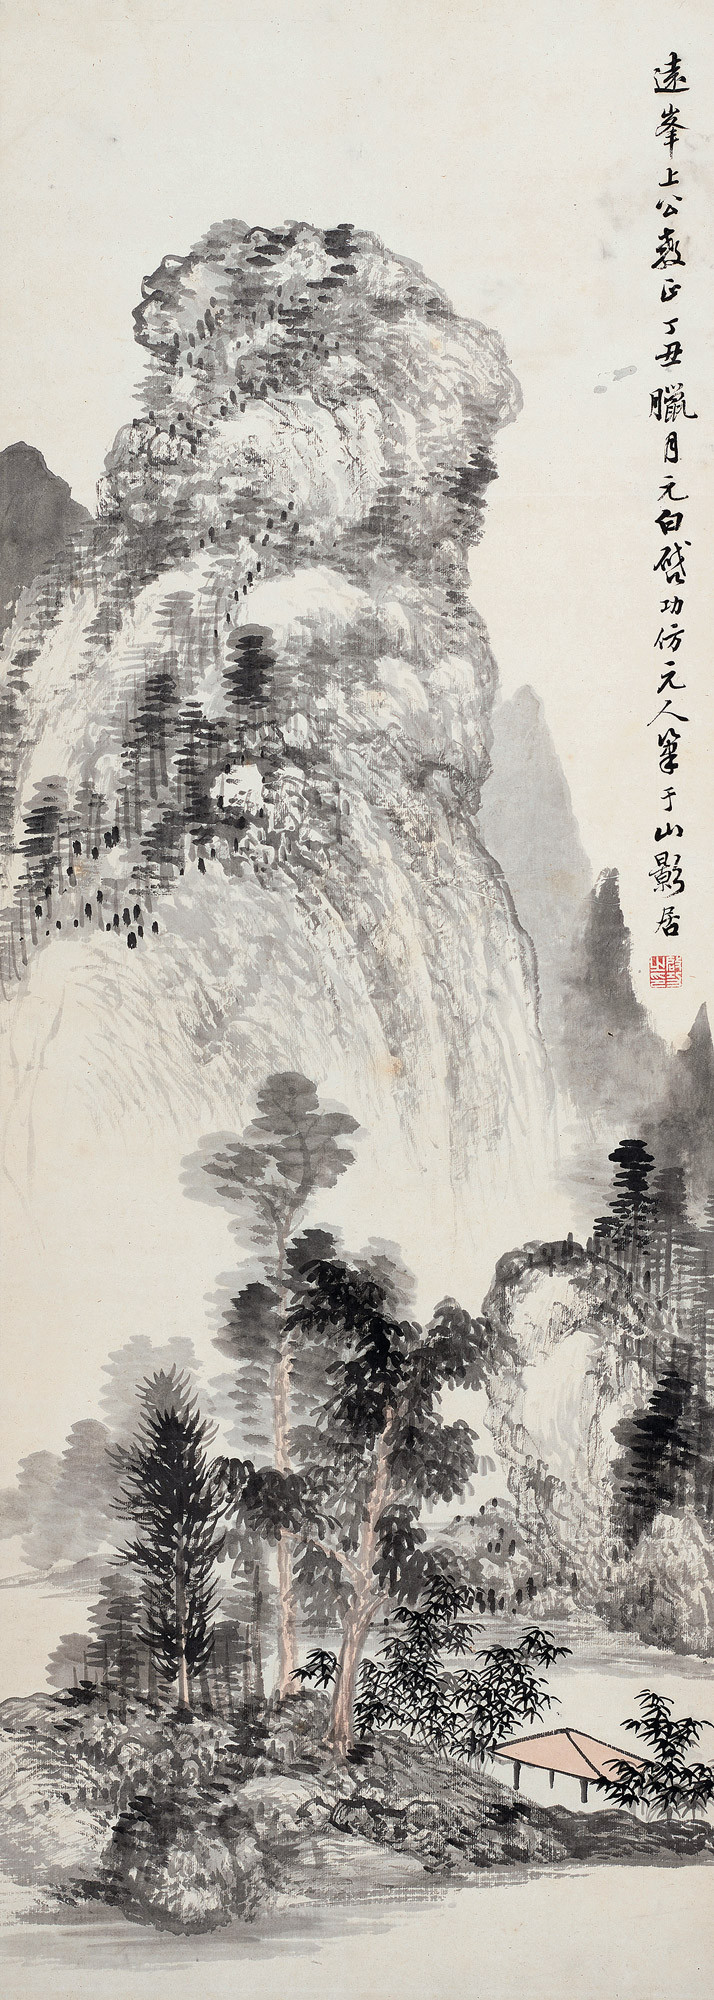 Landscape in Yuan Style